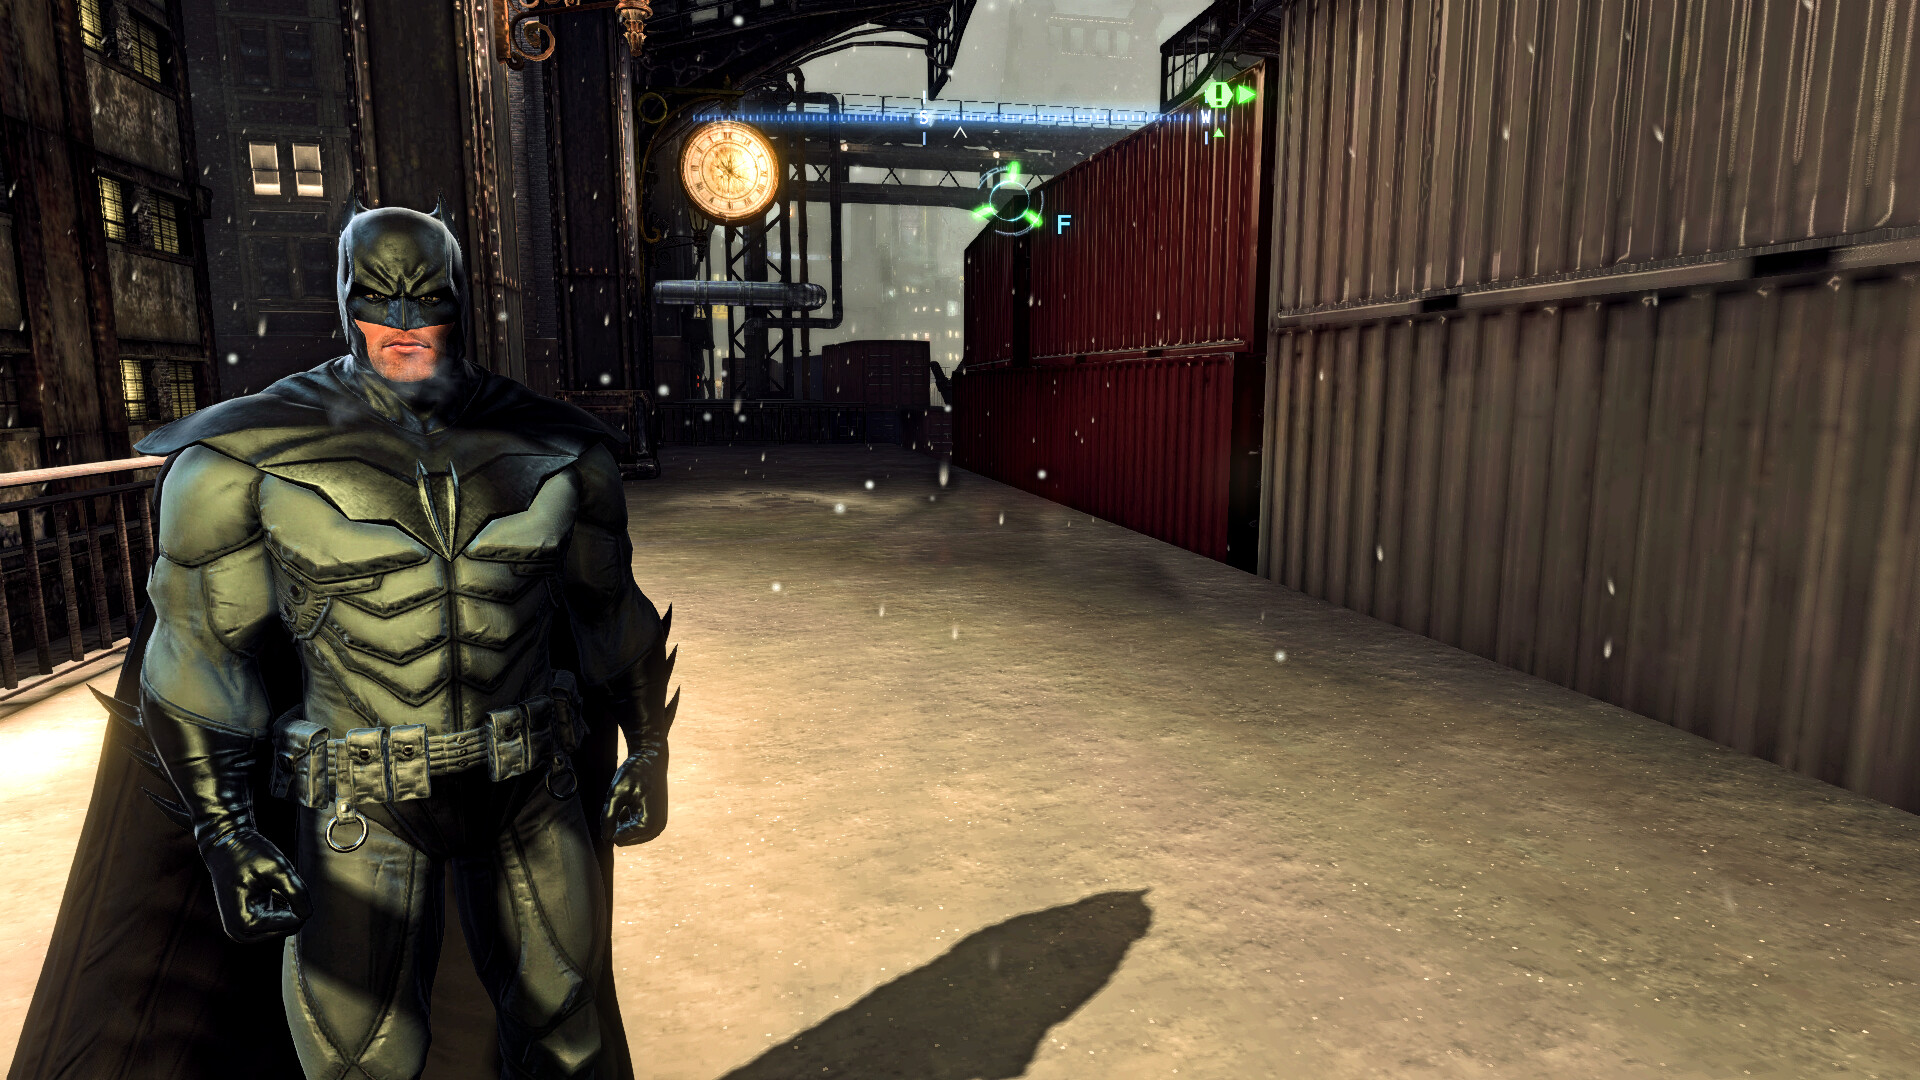 Batman: Arkham Origins Graphics Mod Is The Remaster Fans Deserve